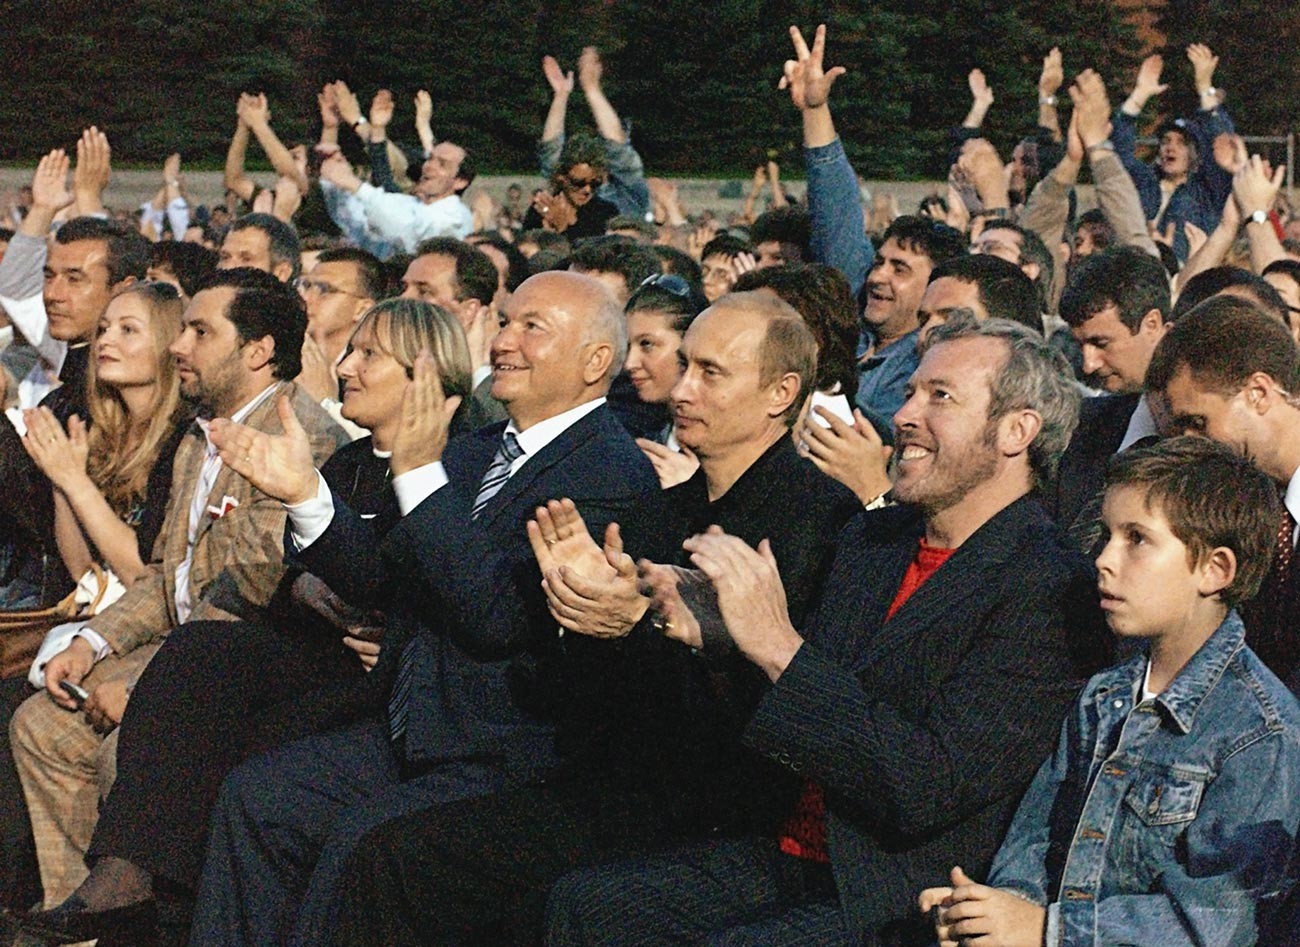 Da sinistra: Yurij Luzhkov (all'epoca sindaco di Mosca), Vladimir Putin e il famoso musicista rock russo Andrej Makarevich al concerto di McCartney in Piazza Rossa